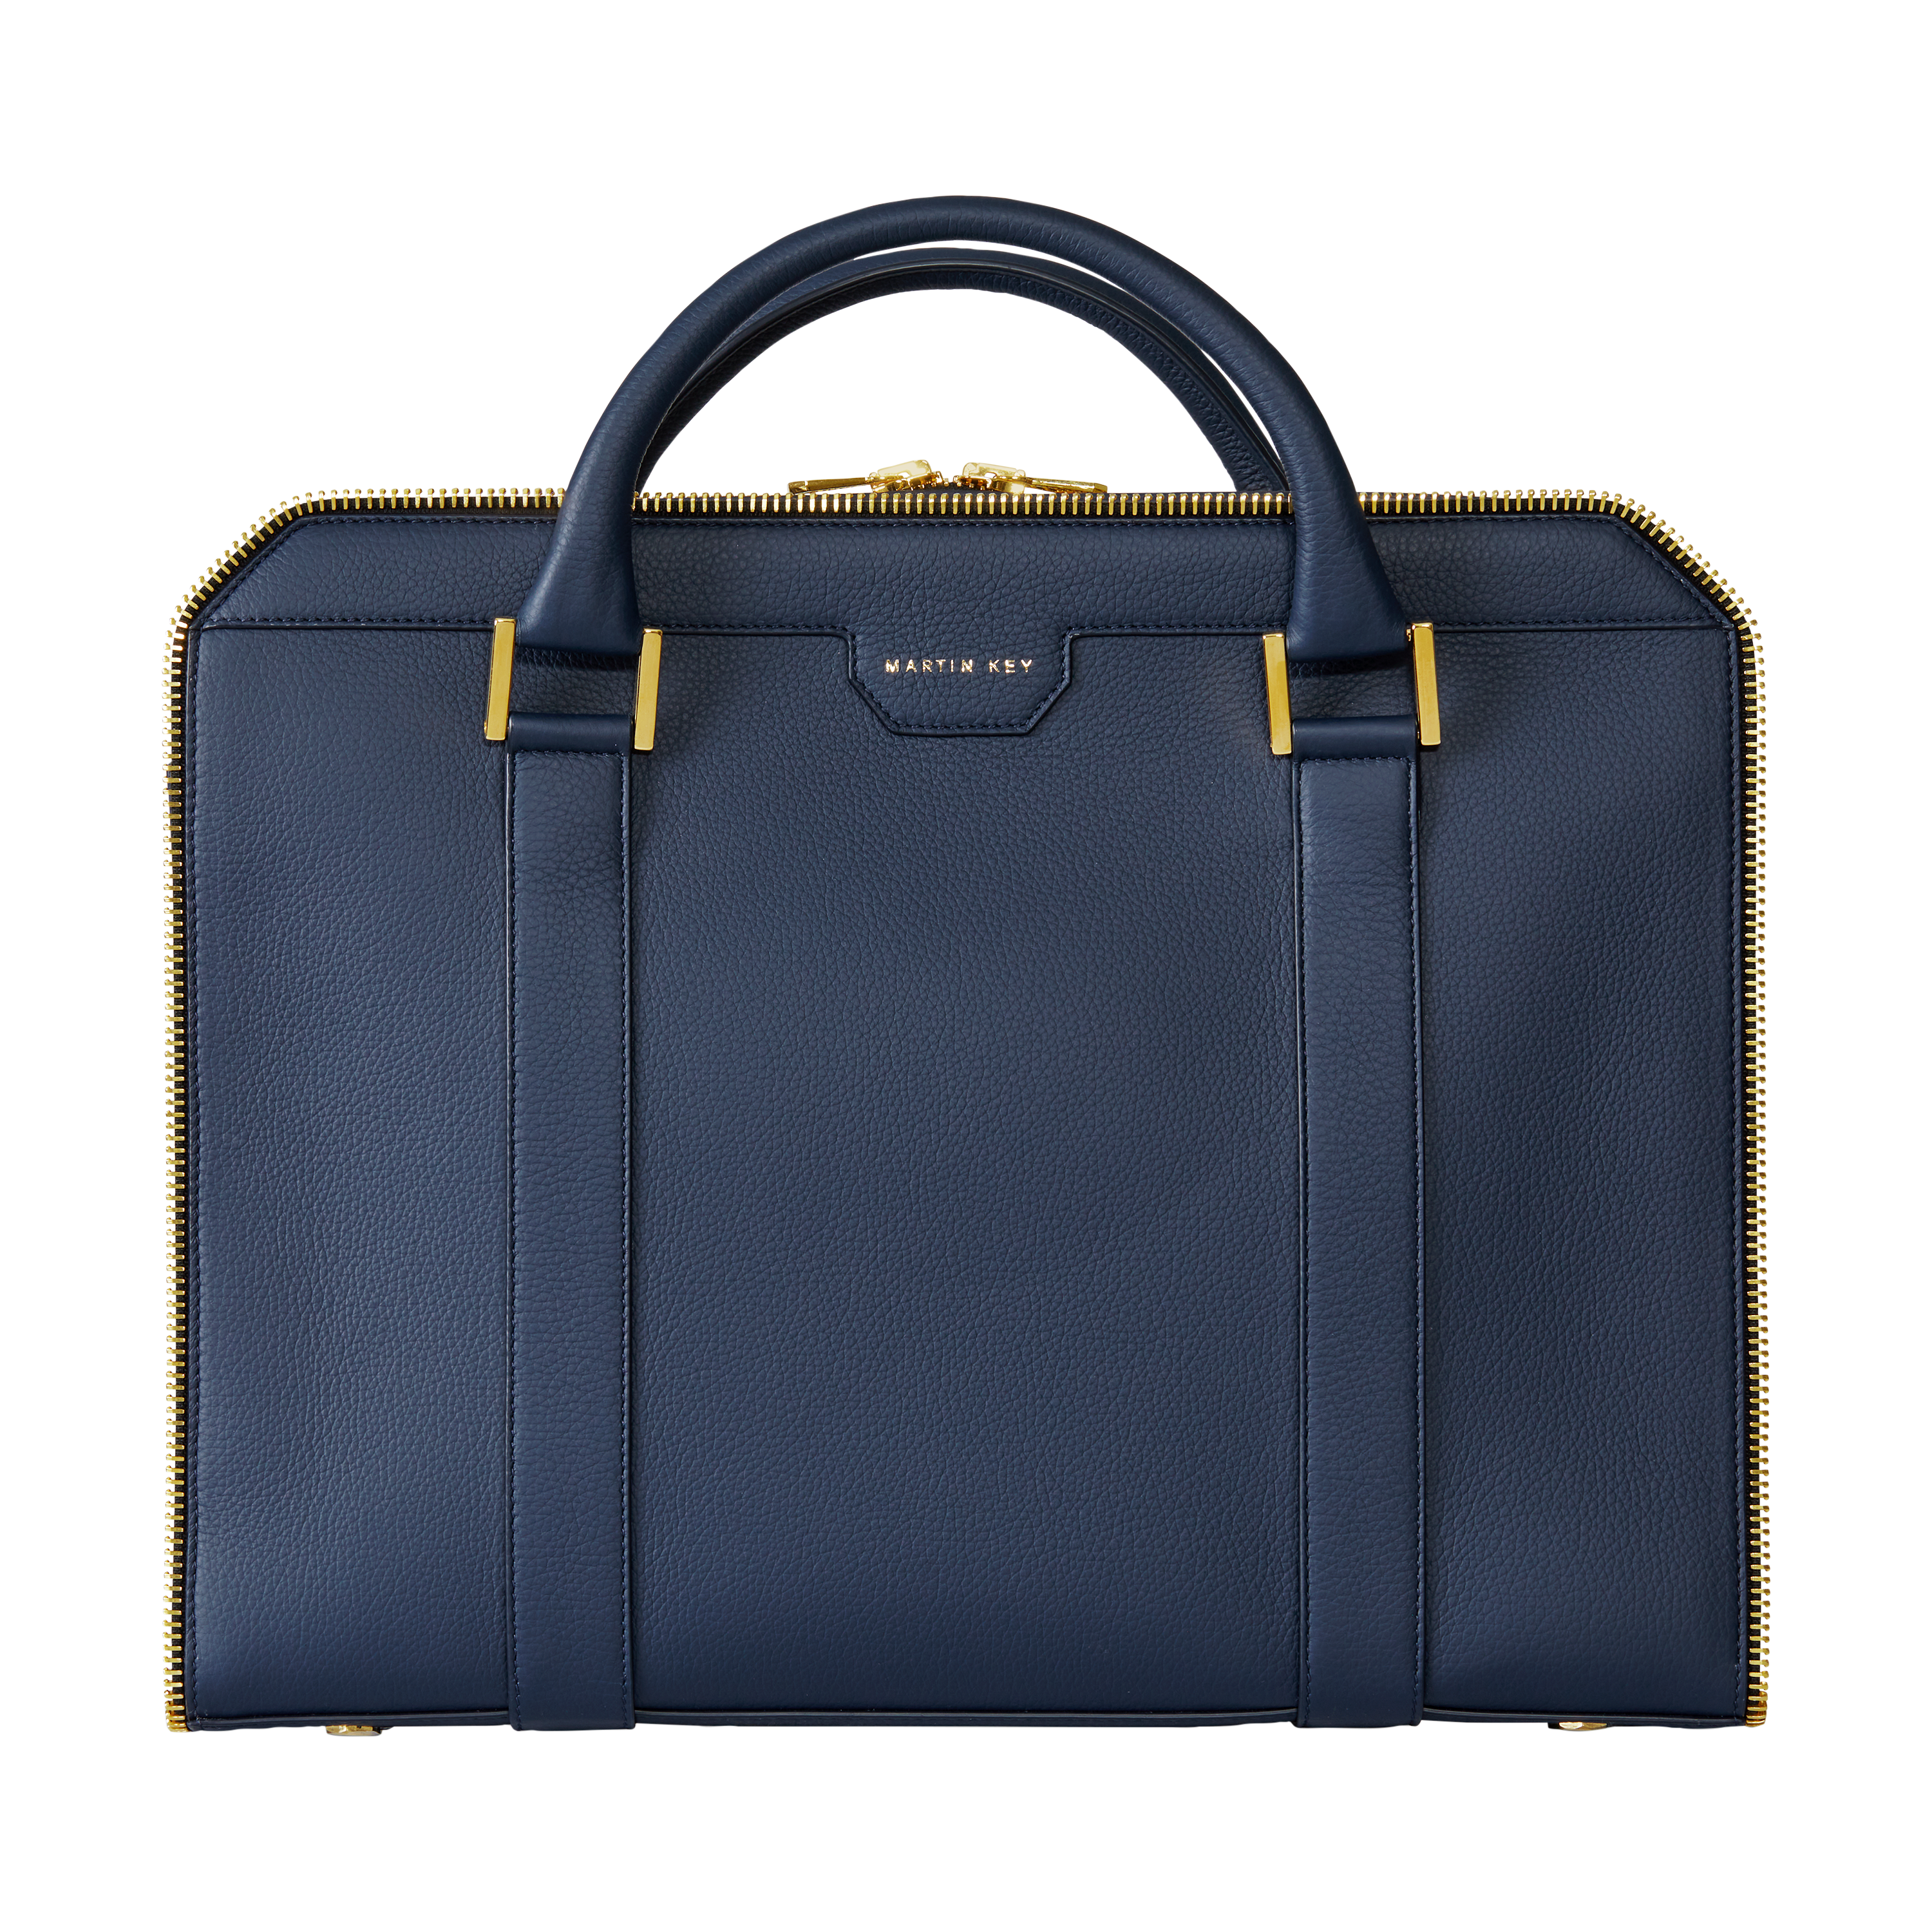 Bag Briefcase calf blue gold